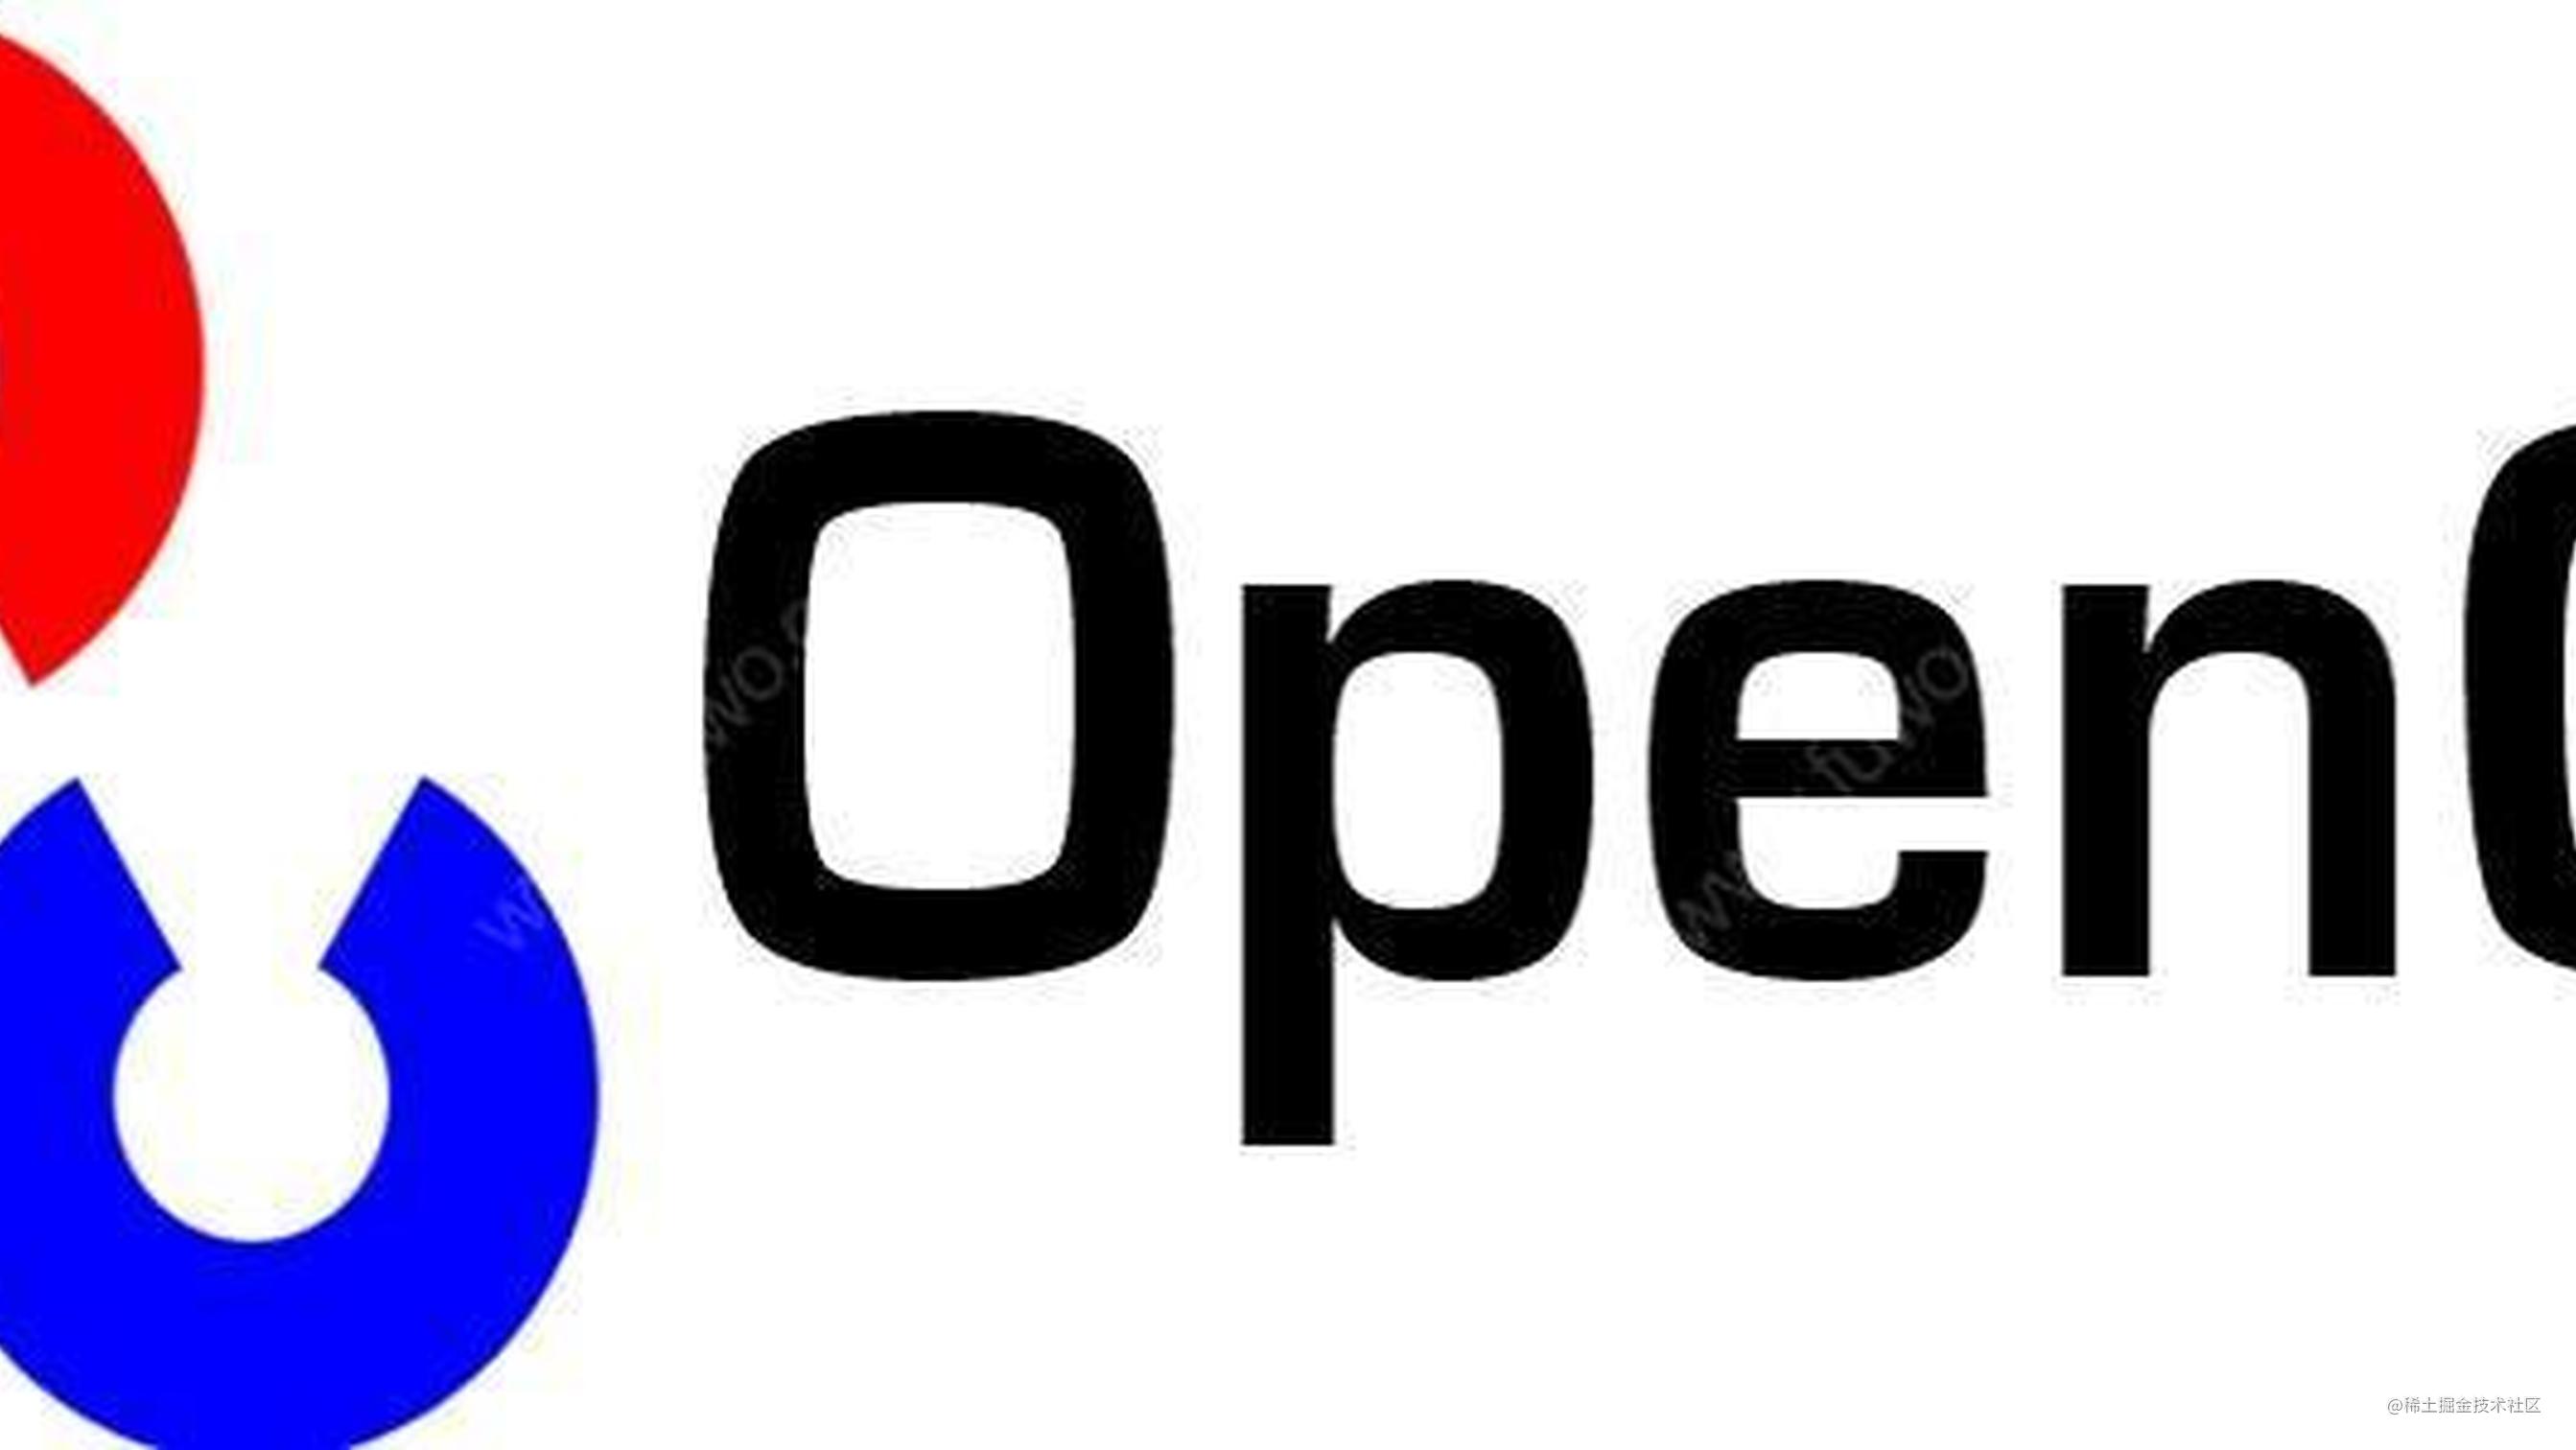 【Python3-OpenCV】将图片转化为素描图